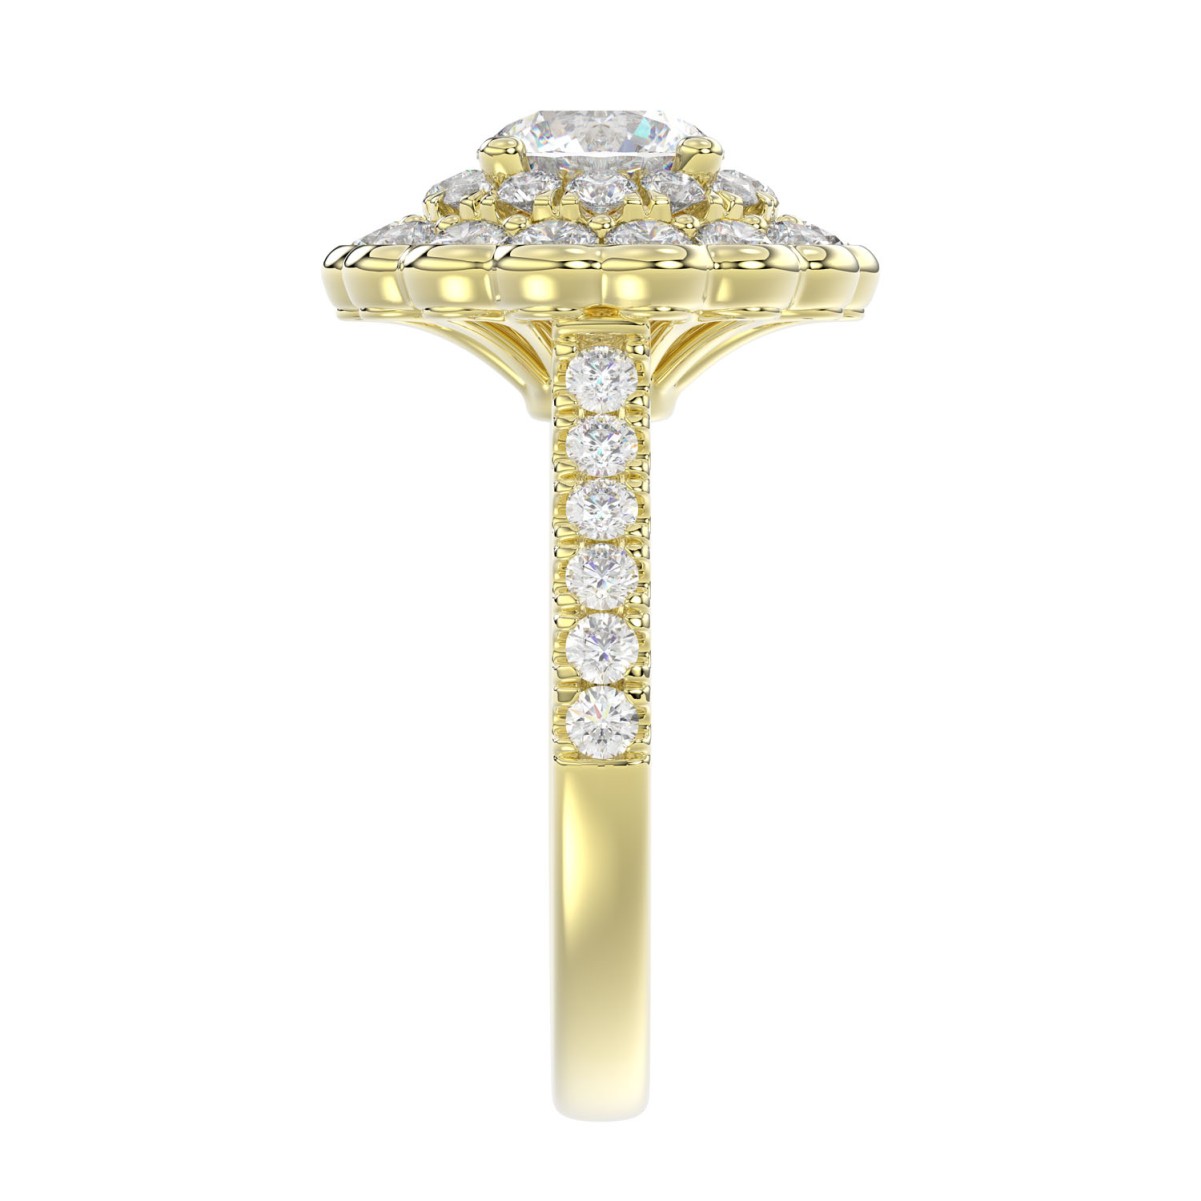 18K YELLOW GOLD 1 1/4CT ROUND DIAMOND LADIES RING (CENTER STONE ROUND DIAMOND 1/2CT)